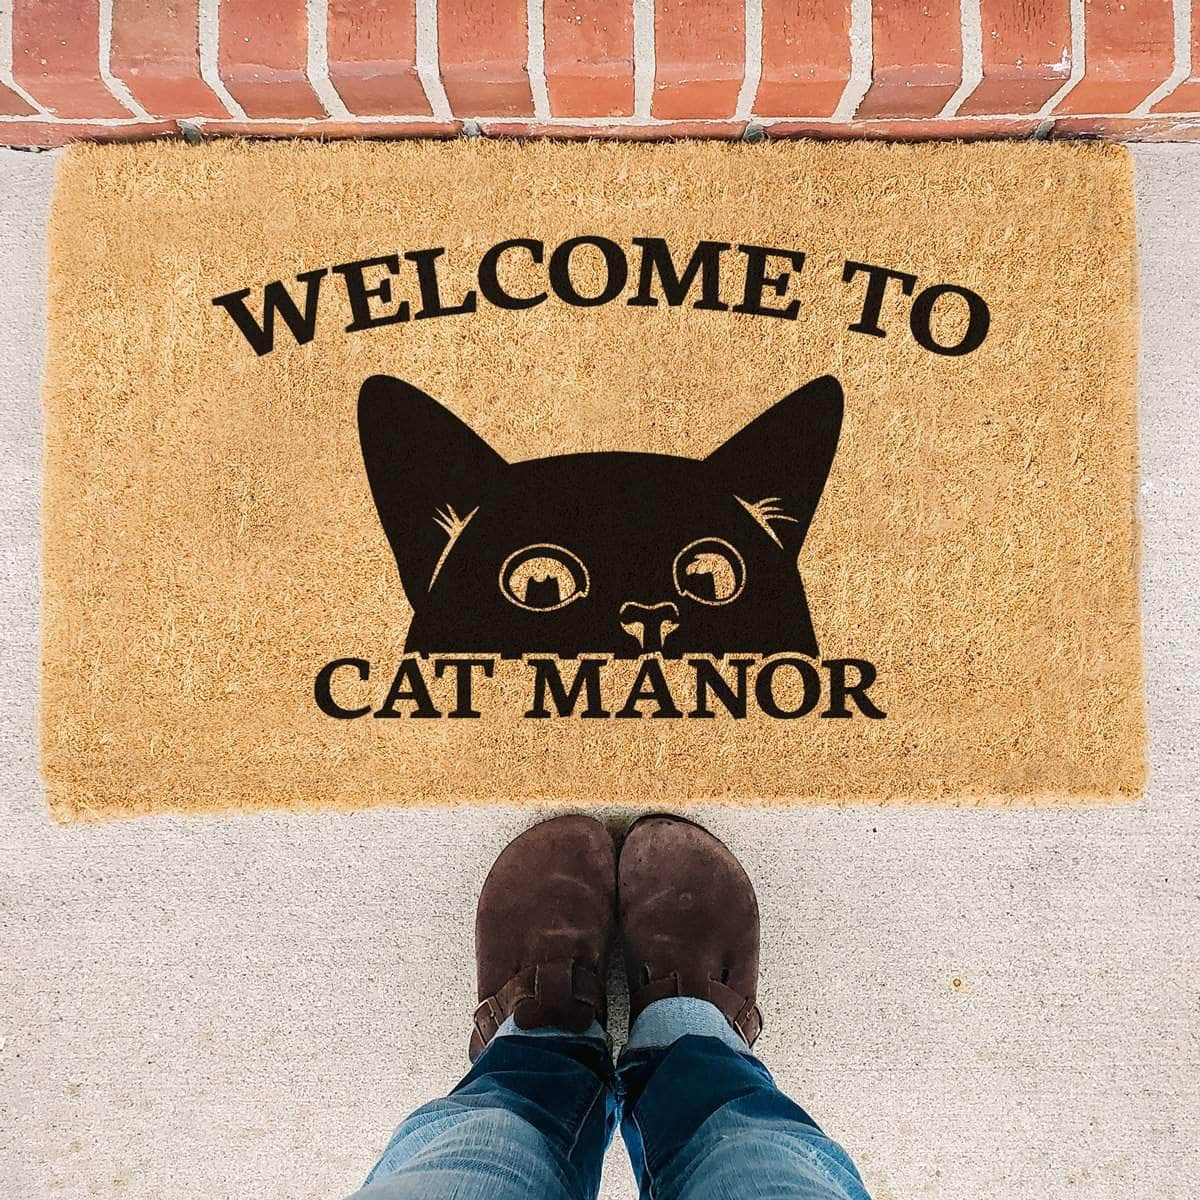 Welcome to Cat Manor - Doormat